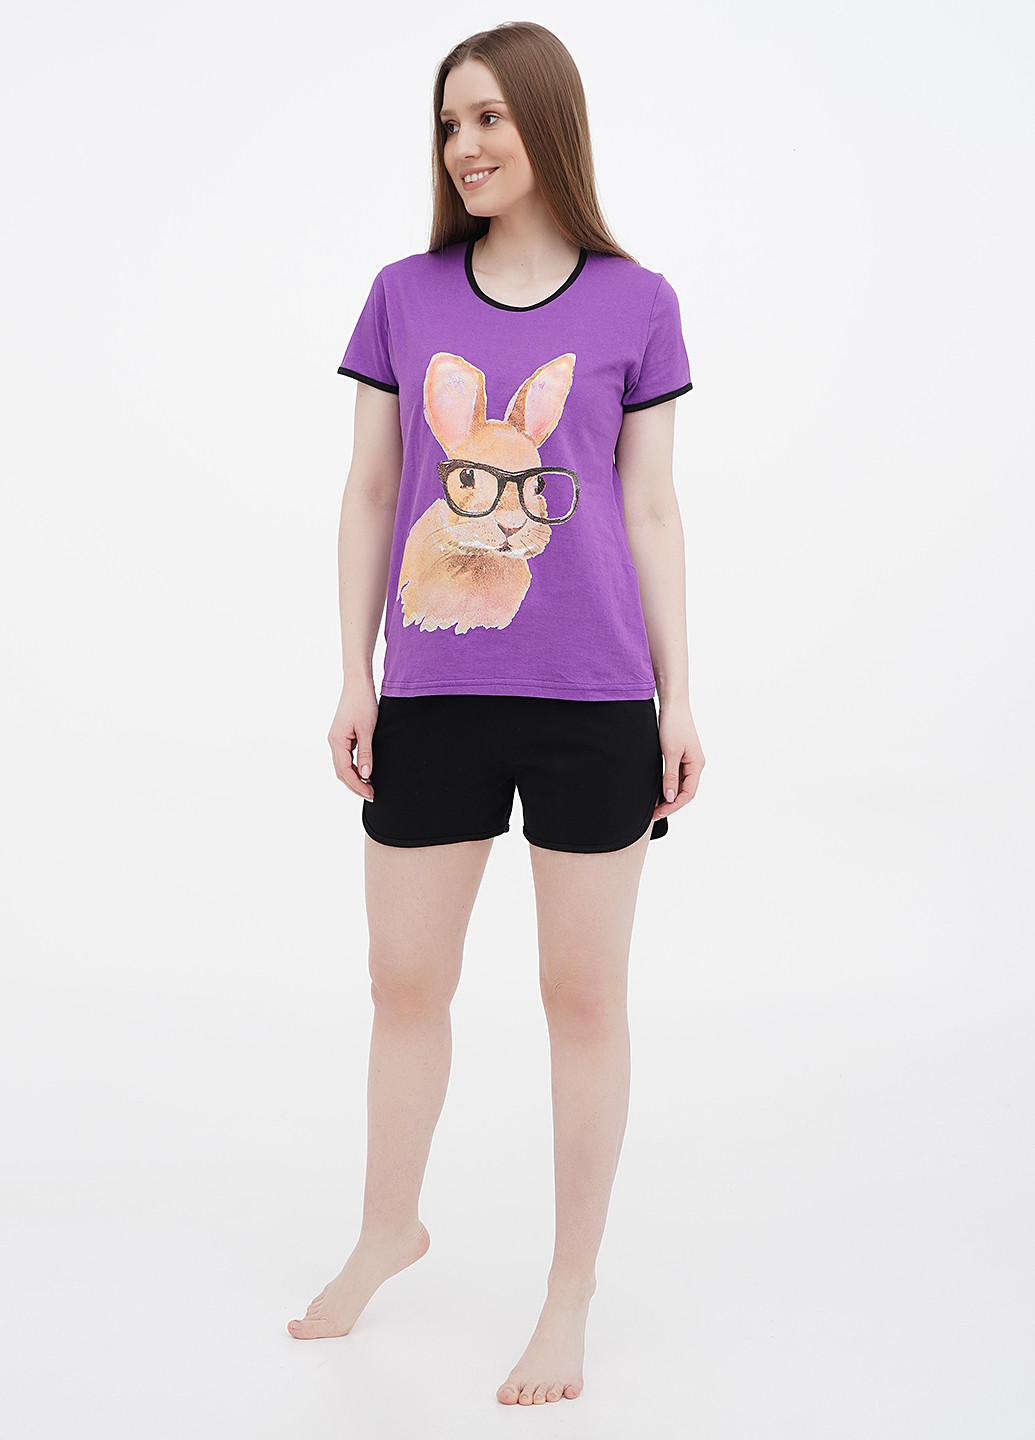 Фиолетовая всесезон пижама (футболка, шорты) футболка + шорты Lucci